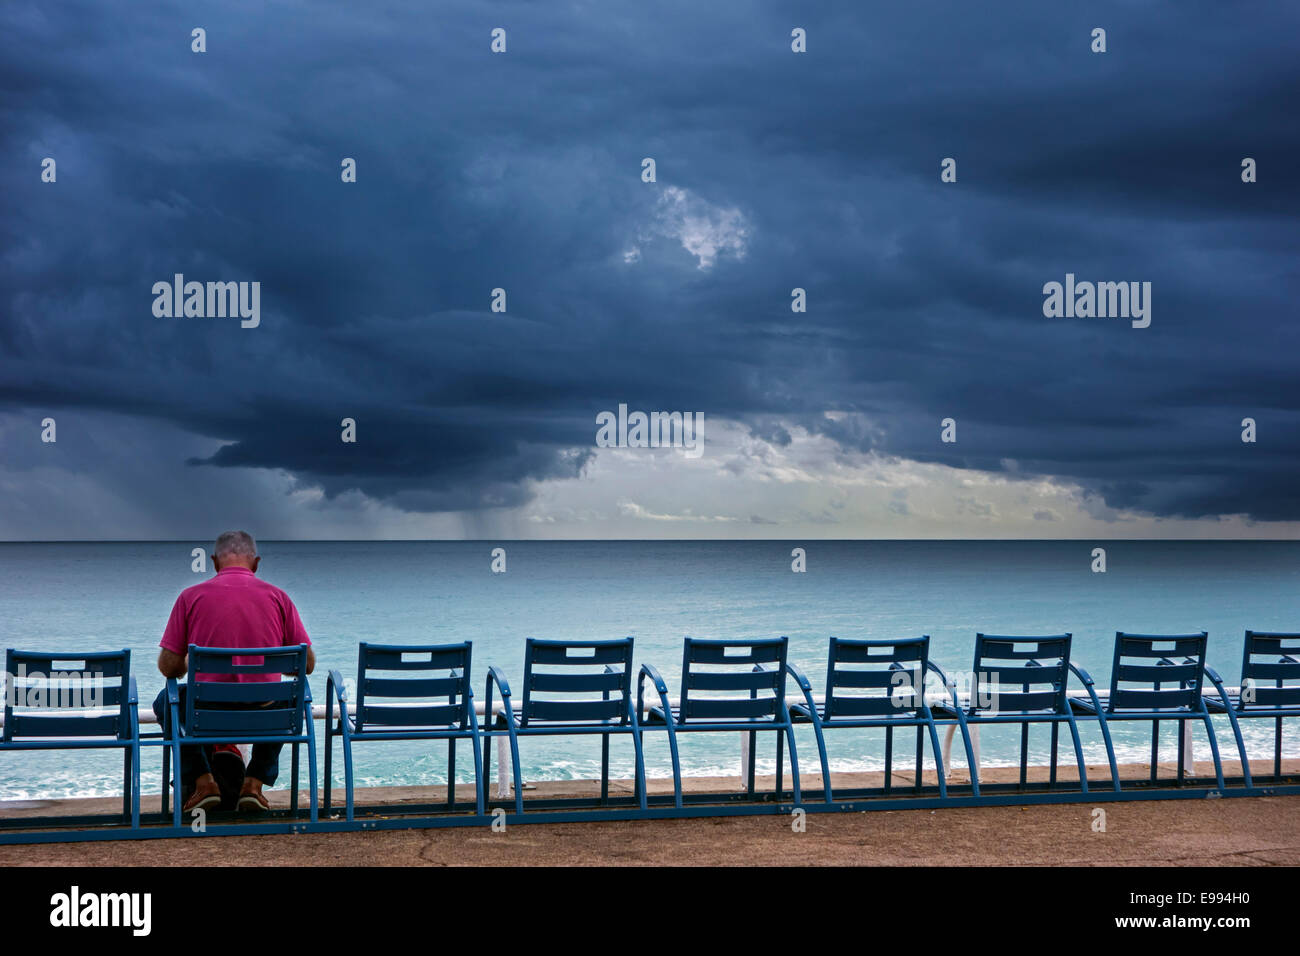 Un homme âgé assis sur un banc à regarder la digue et sombre, de gros nuages menaçants sur la mer Banque D'Images